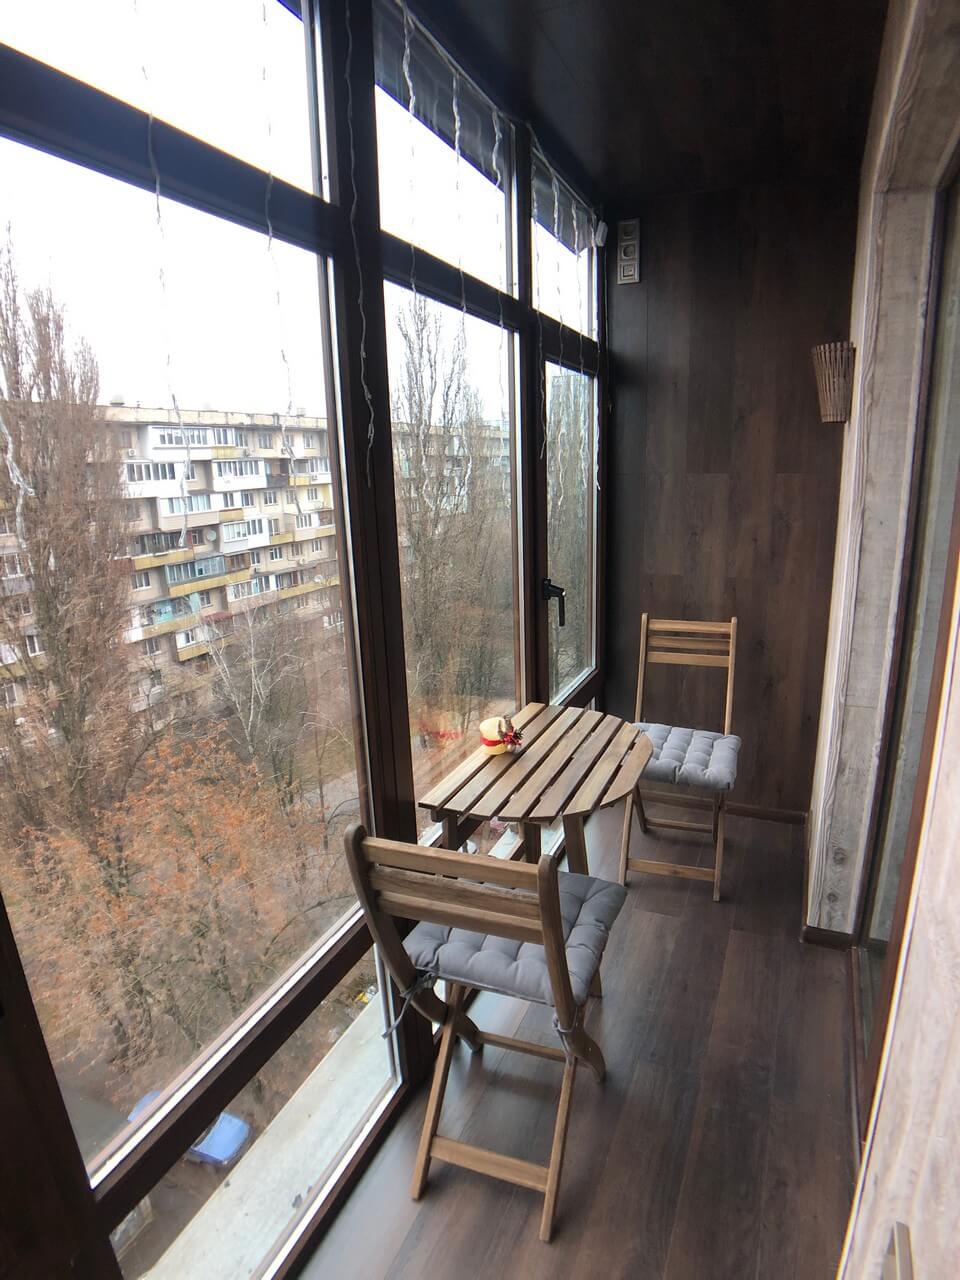 Французский балкон с отделкой ламинат в чешке. Киев, ул. Зодчих, 40 05